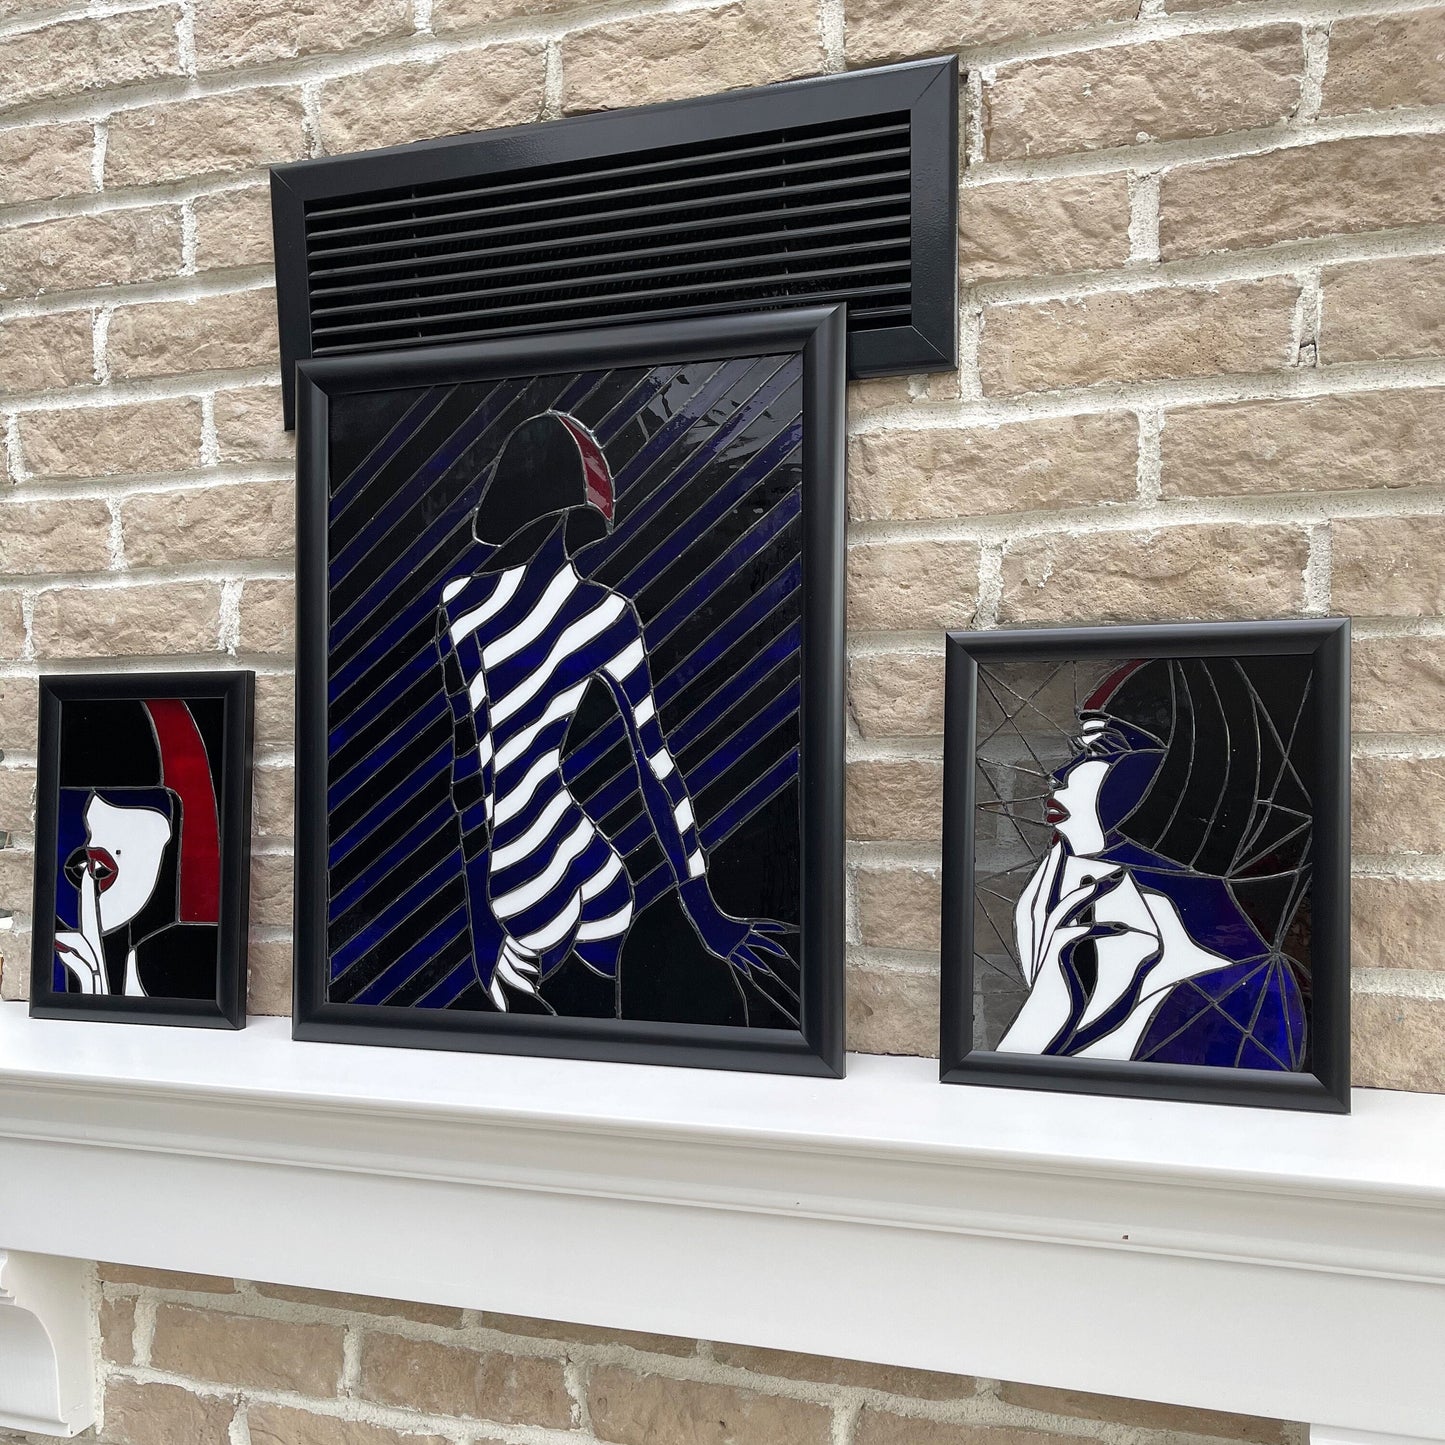 Vidrieras mujer desnuda, panel de arte de vidrio moderno, decoración del hogar de niña desnuda